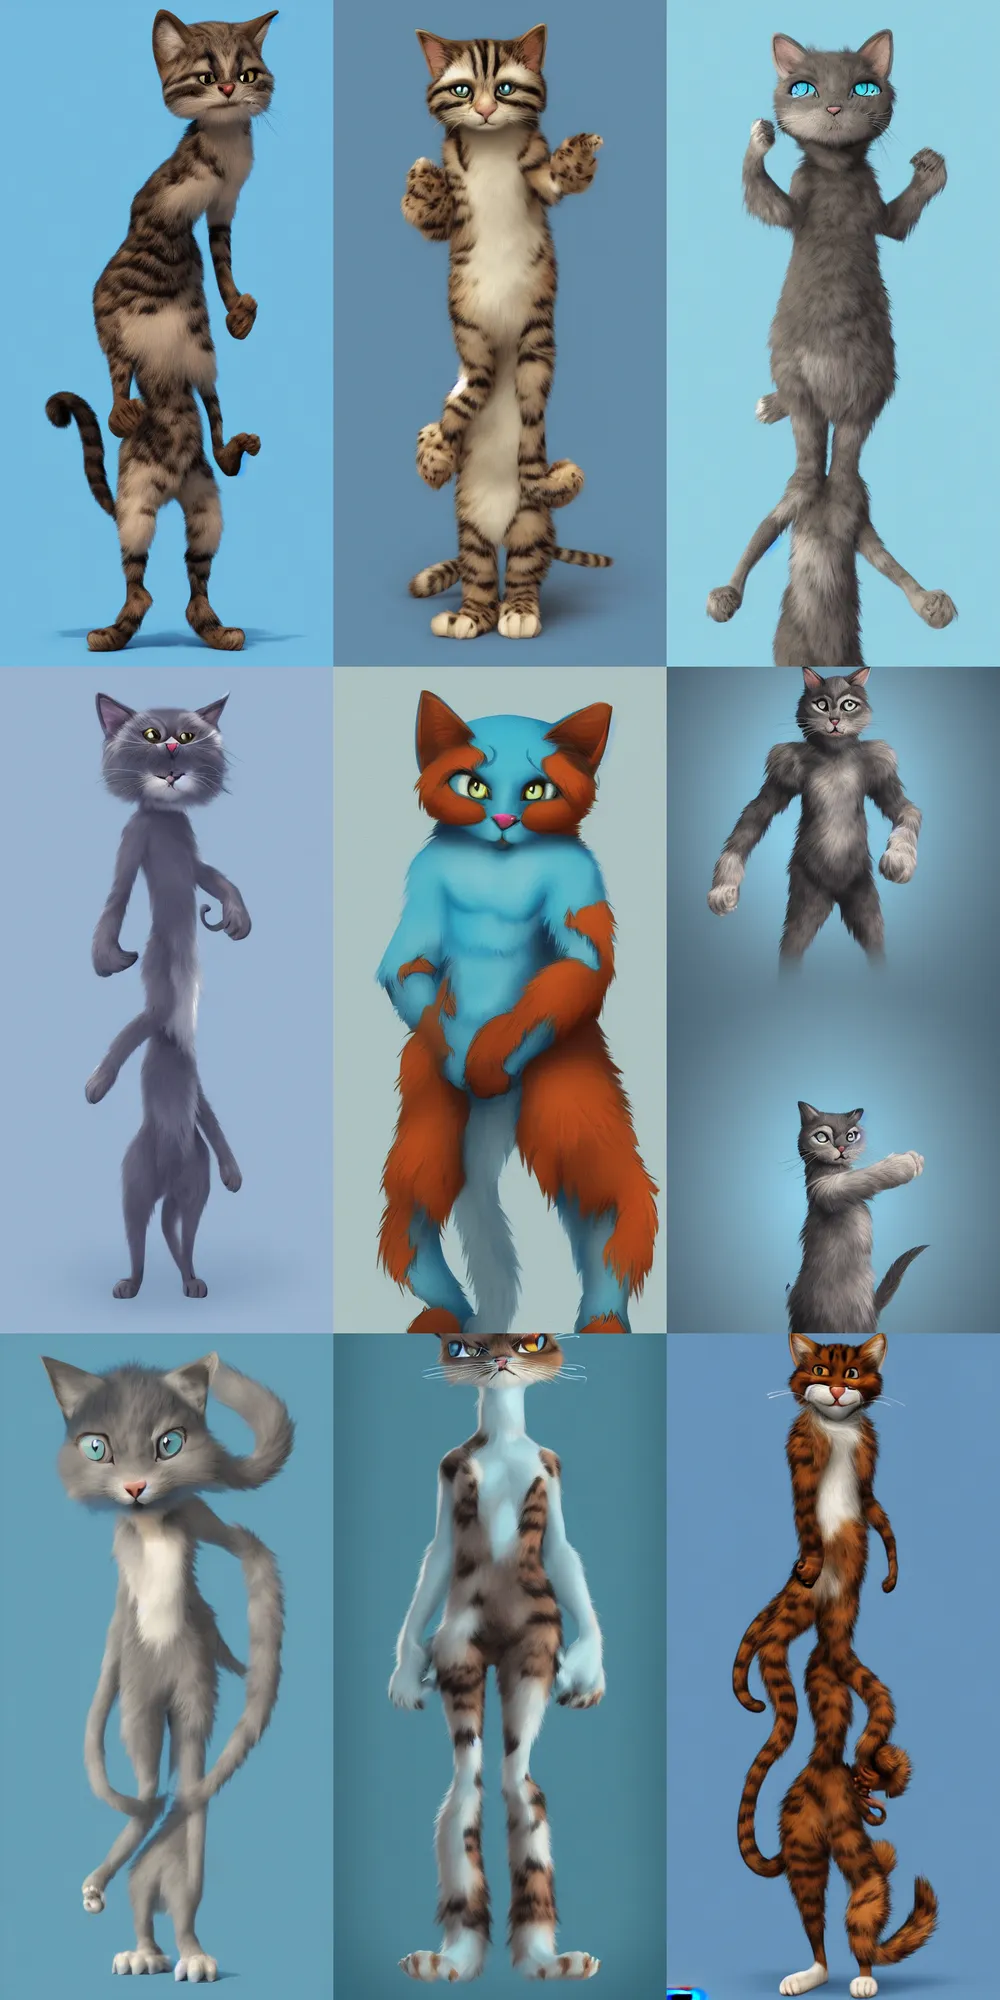 Prompt: An anthropomorphic furry cat, full body shot, light blue background, digital art, Artstation